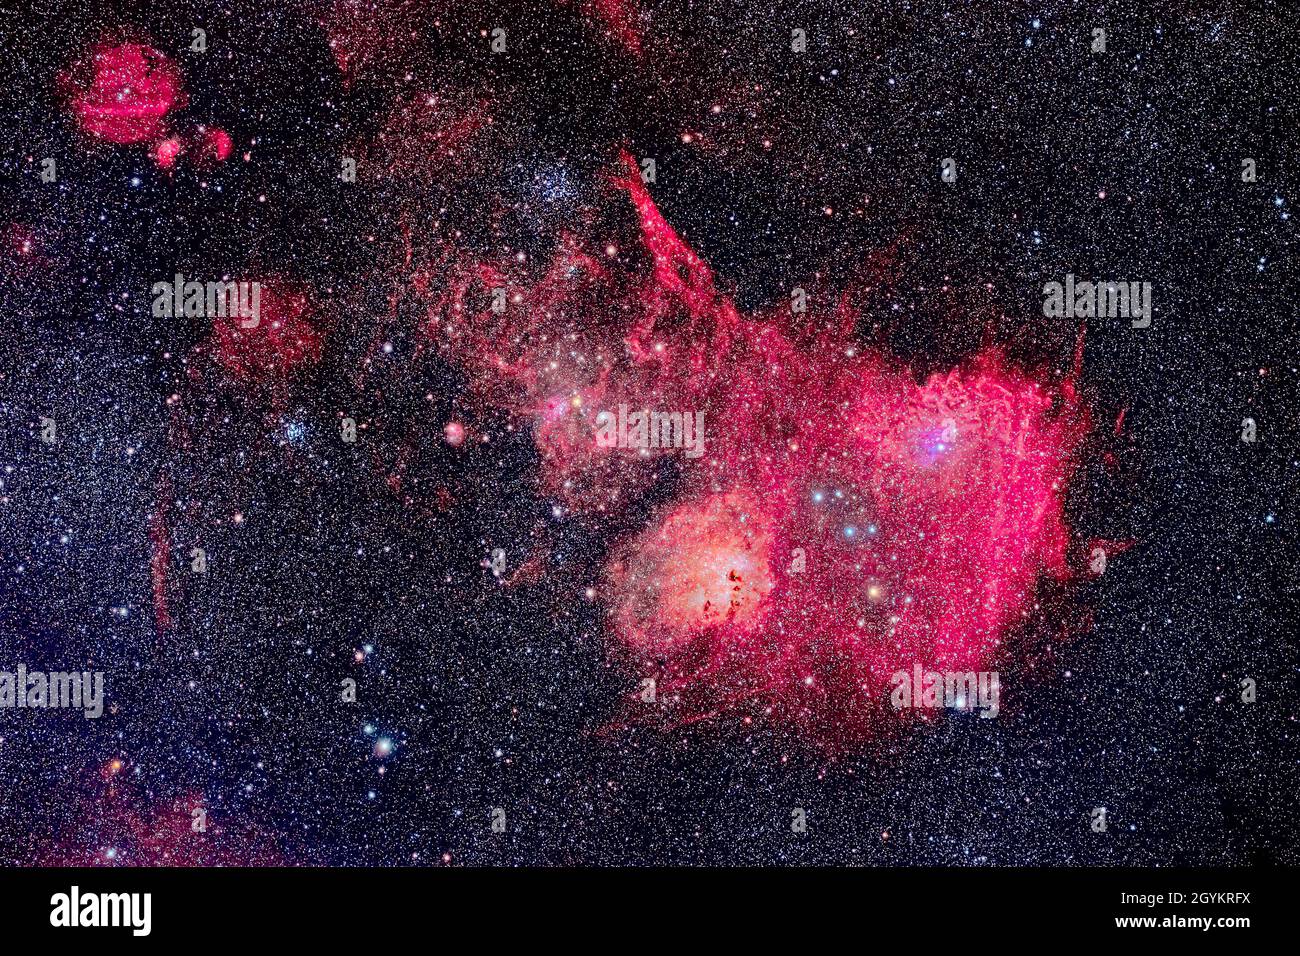 Si tratta di un ritratto delle principali nebulose incandescenti tra i grappoli stellari nel centro di Auriga, il Charioteer. La nebulosa principale a destra è il Neb della stella di Flaming Foto Stock